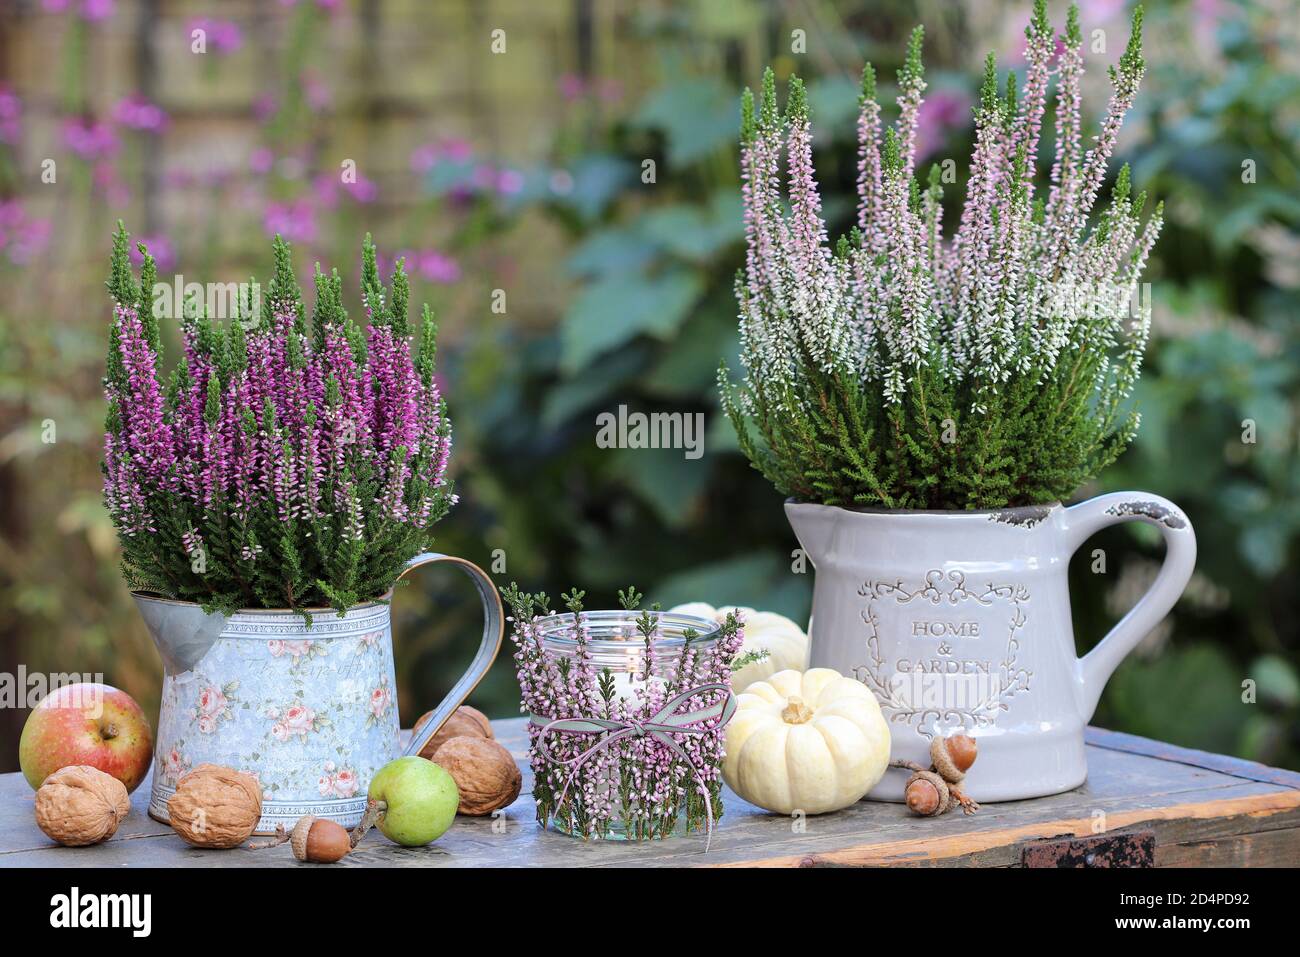 decorazione giardino d'epoca con fiori di erica, zucche e lanterna da tavolo Foto Stock